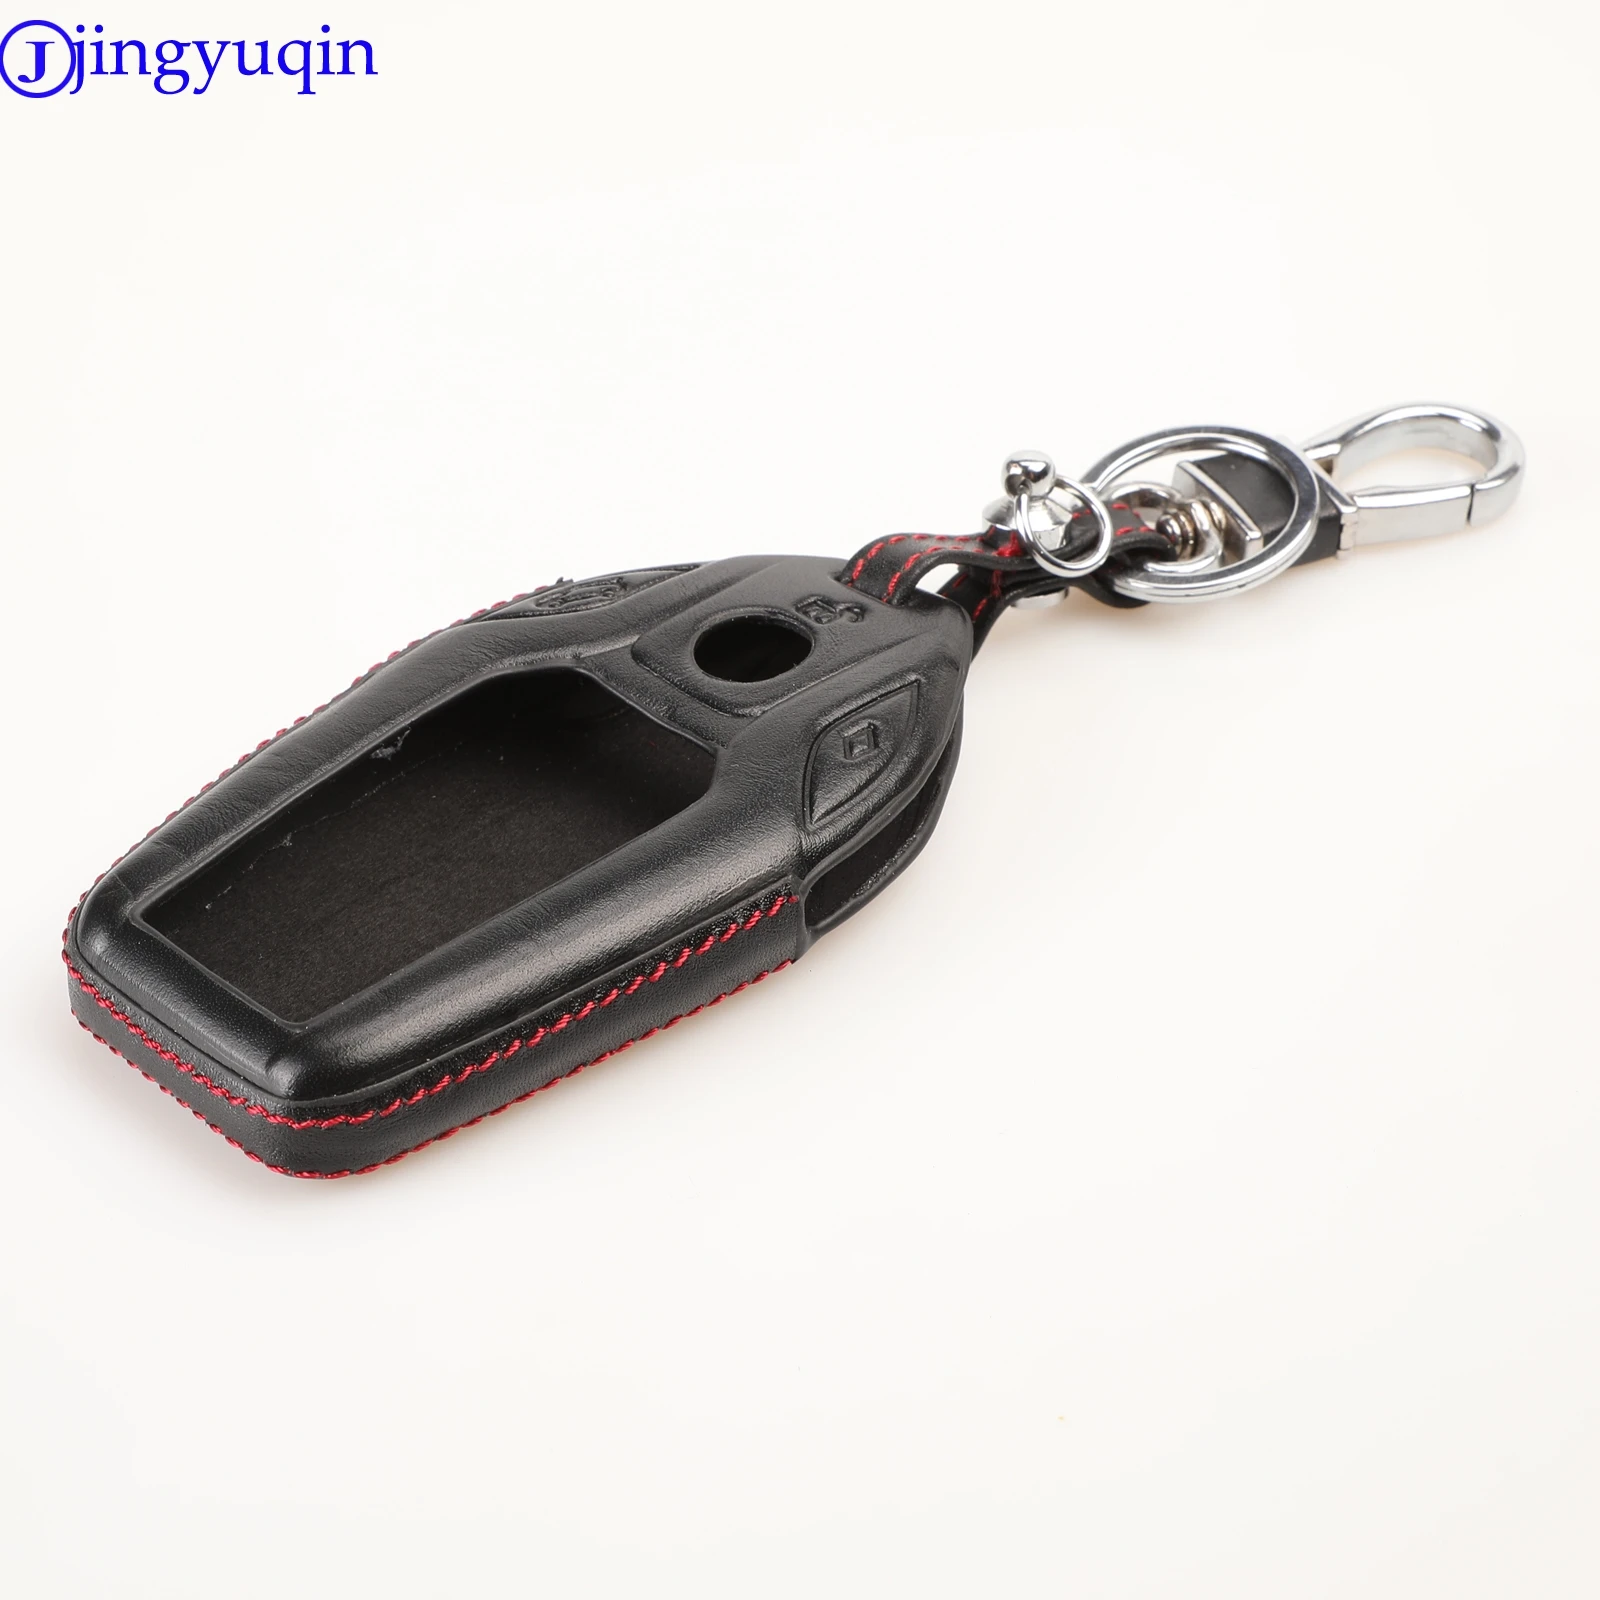 Jingyuqin чехол для ключей автомобиля из натуральной кожи, защитный чехол для BMW 7 серии